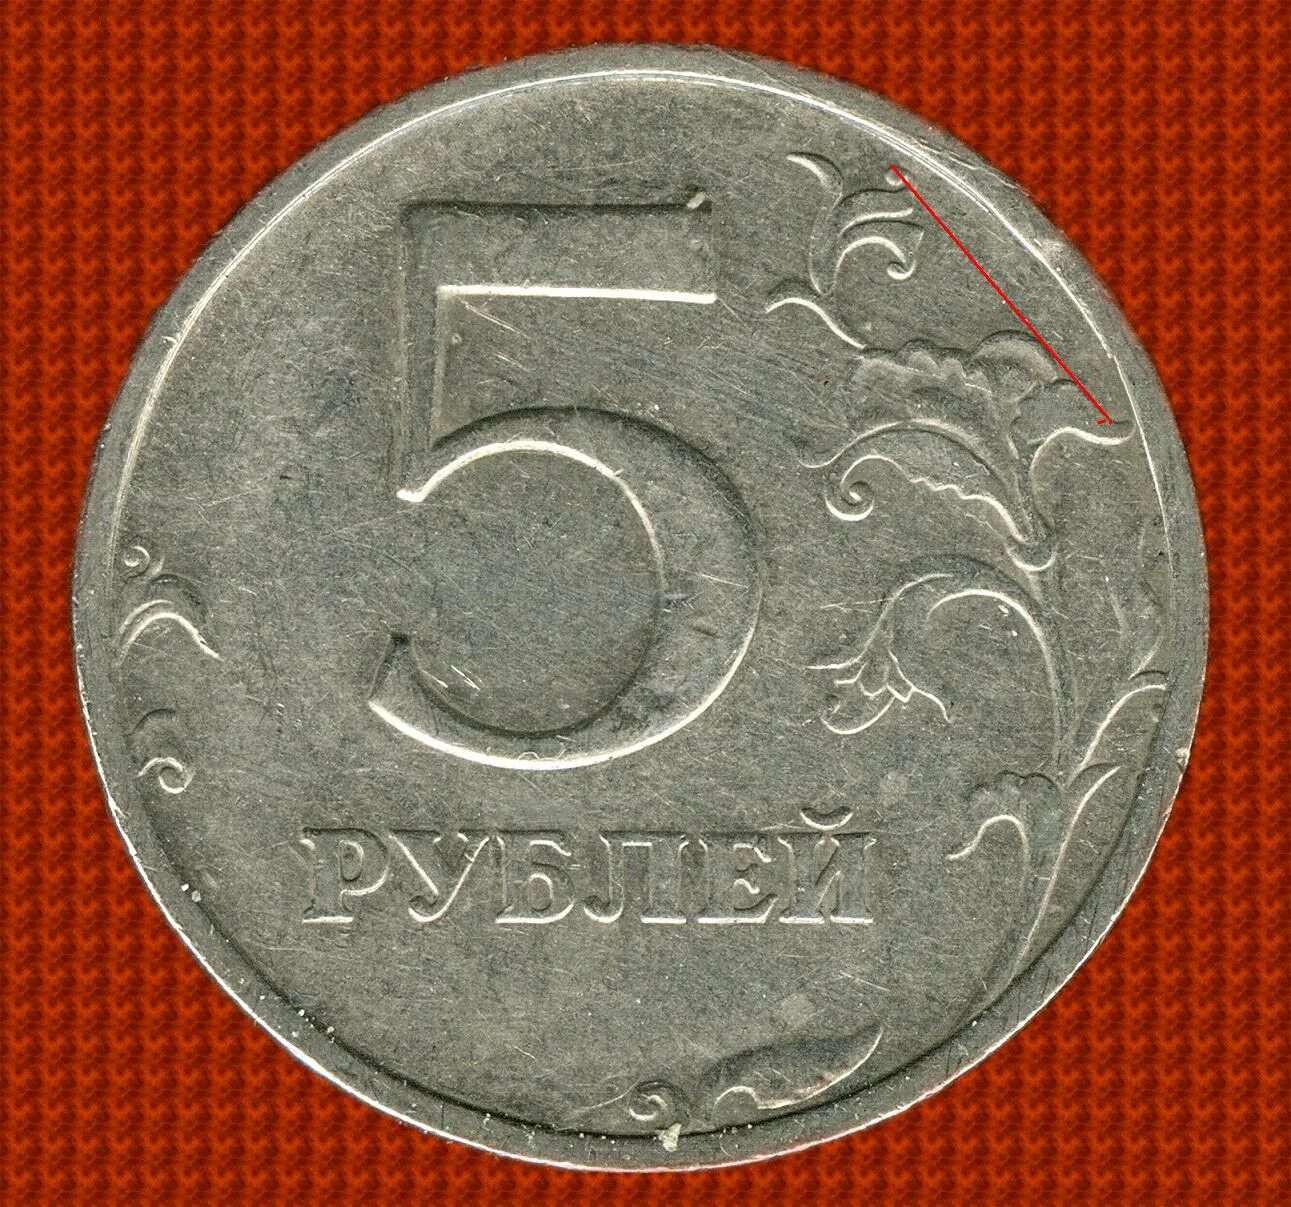 5 рублей стороны. 5 Рублей 1998 ММД. 5 Рублей 1998 СПМД. 5 Рублей 1998 Московский монетный двор. Пять рублей.